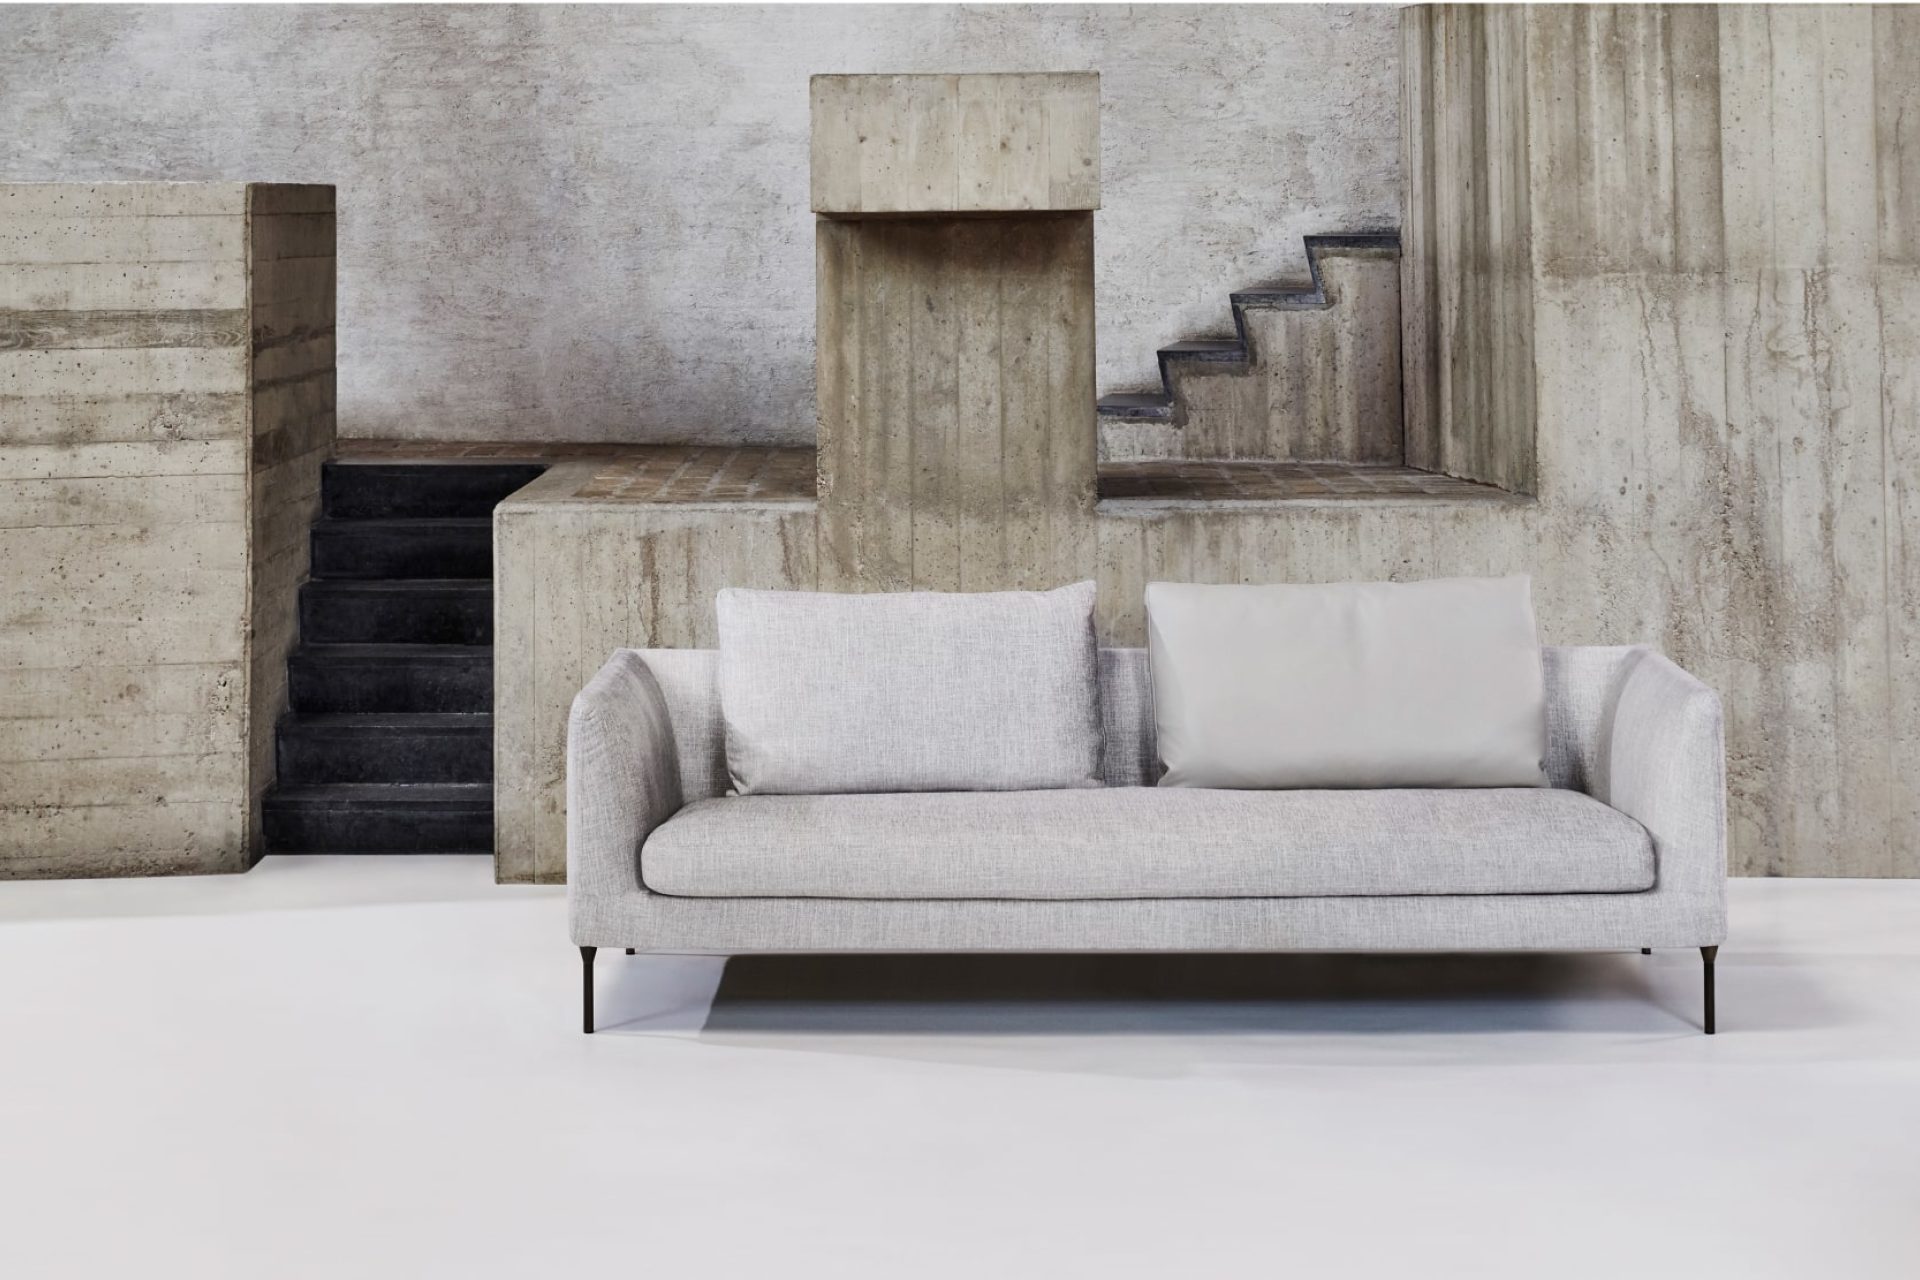 Sofá minimalista de diseño escandinavo con estructura rectangular en tejido gris claro y patas en acero negro, modelo Delta de Bensen, disponible en eba